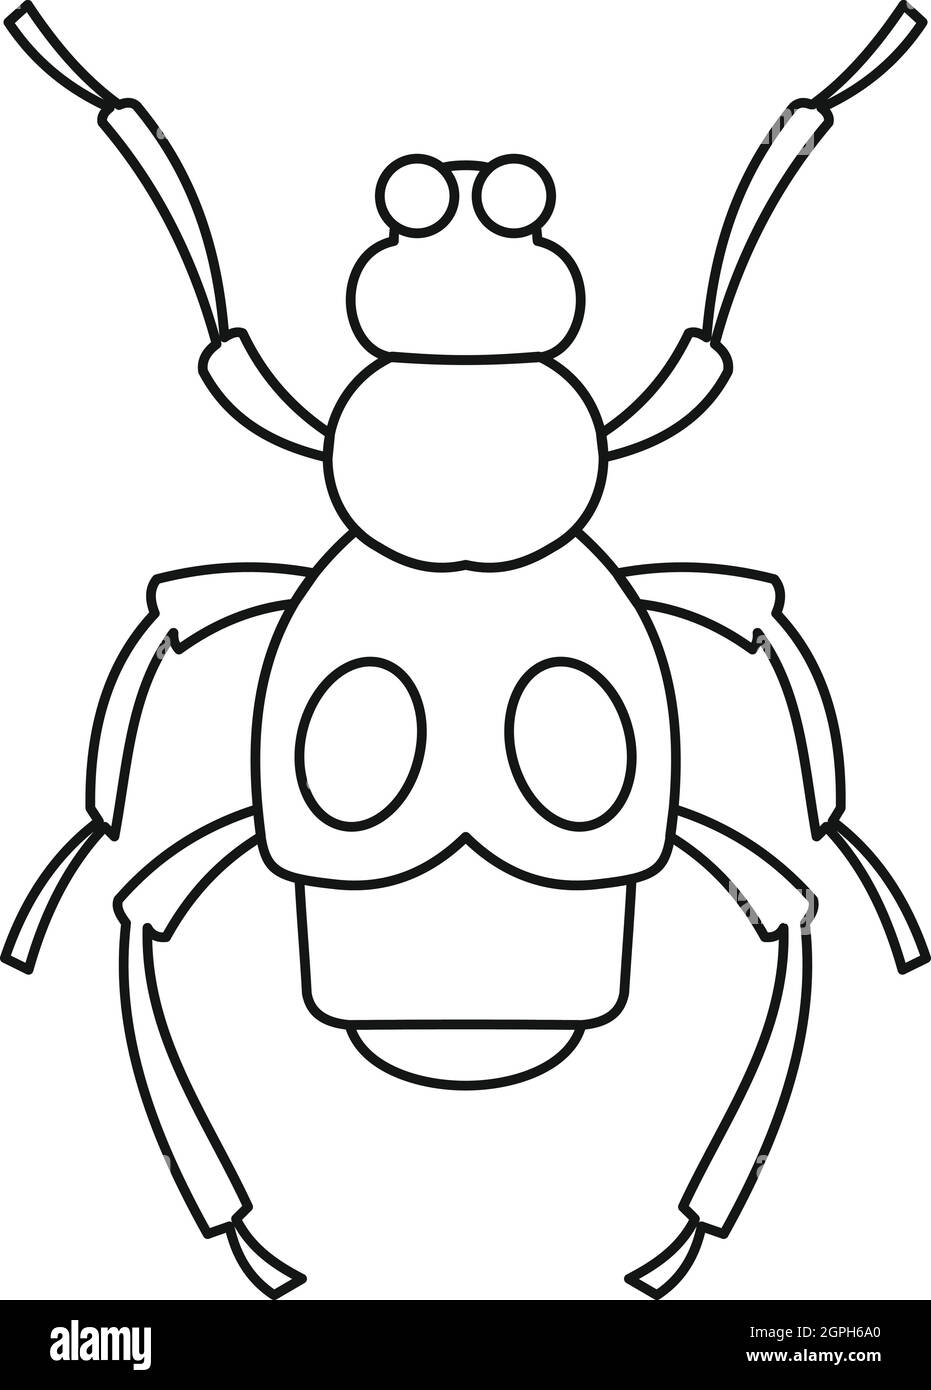 Beetle icona di insetto, stile contorno Illustrazione Vettoriale